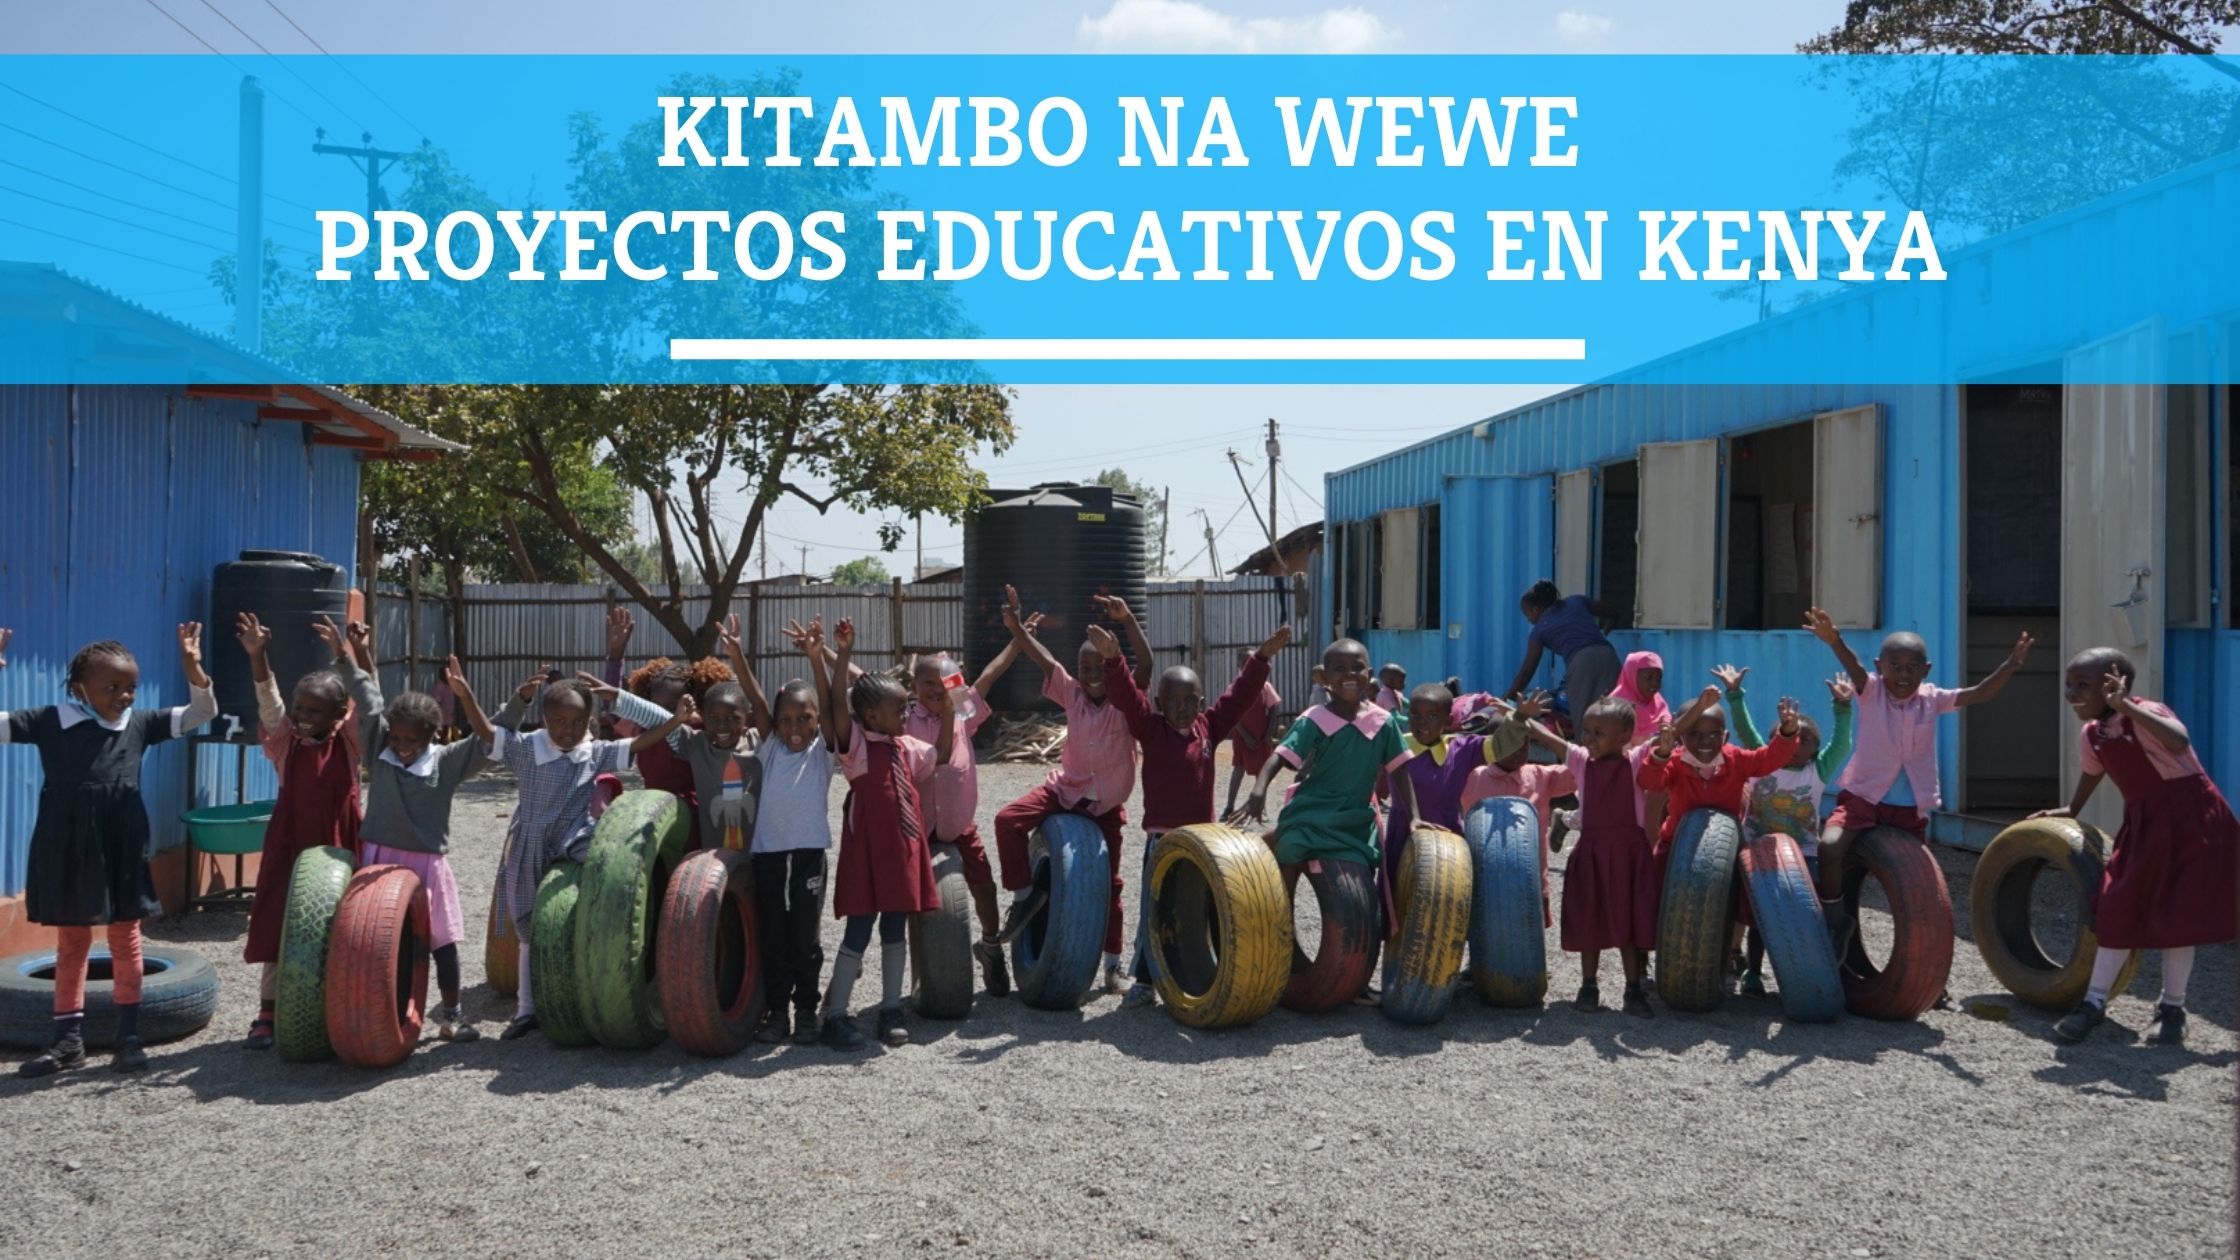 Kitambo na Wewe - Proyectos educativos en Kenya